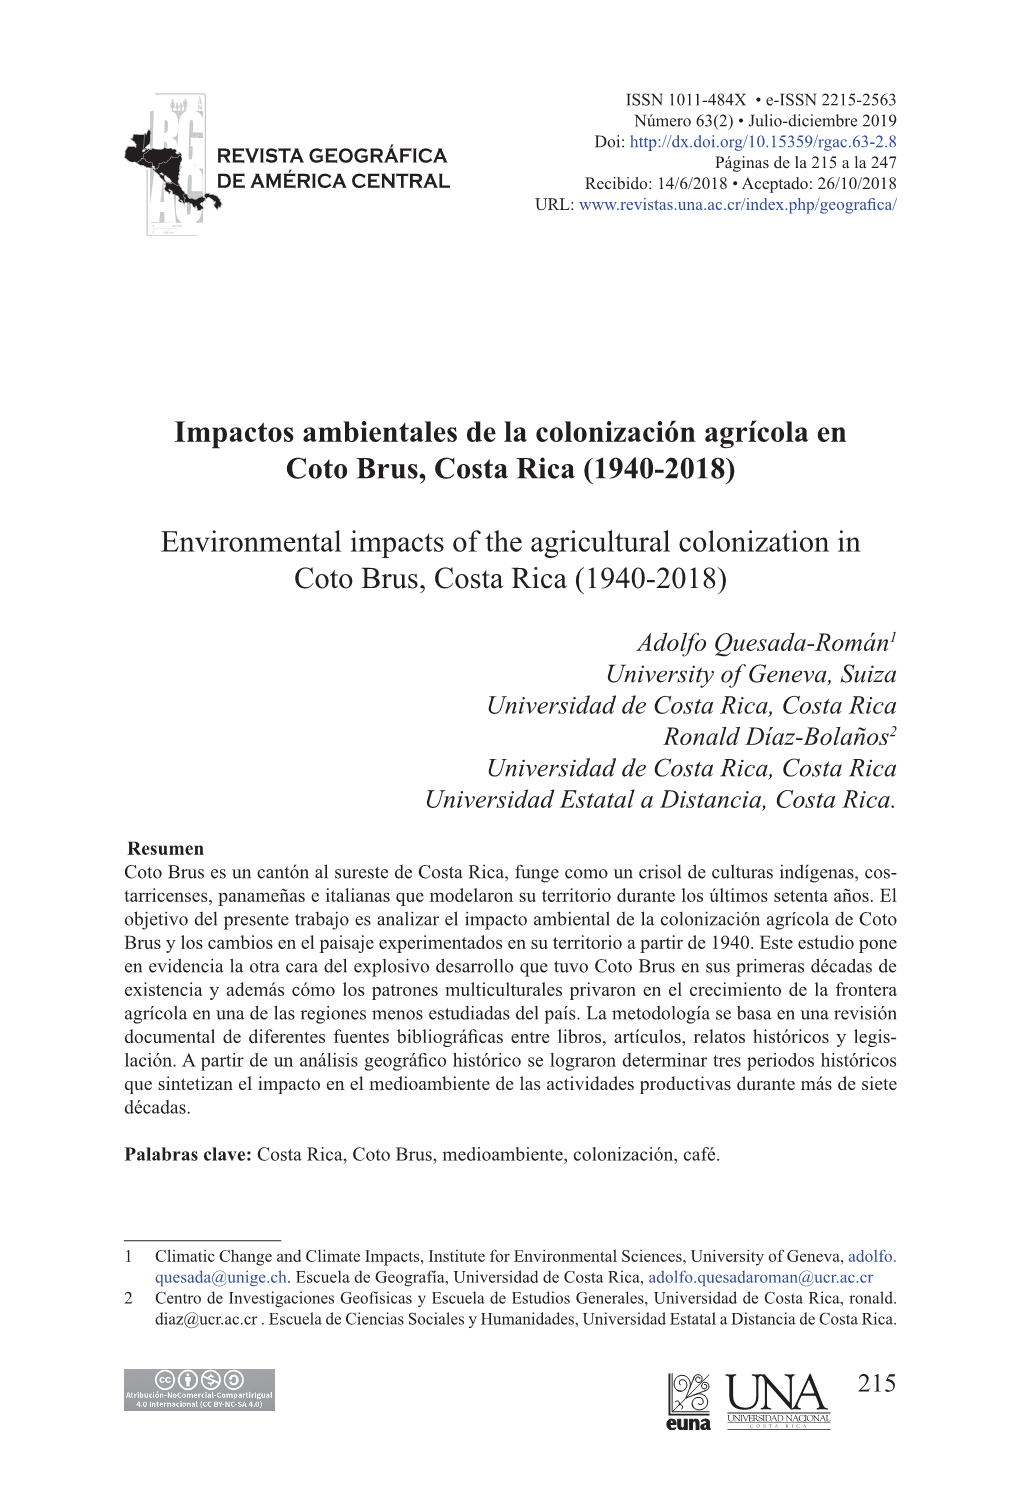 Impactos Ambientales De La Colonización Agrícola En Coto Brus, Costa Rica (1940-2018)